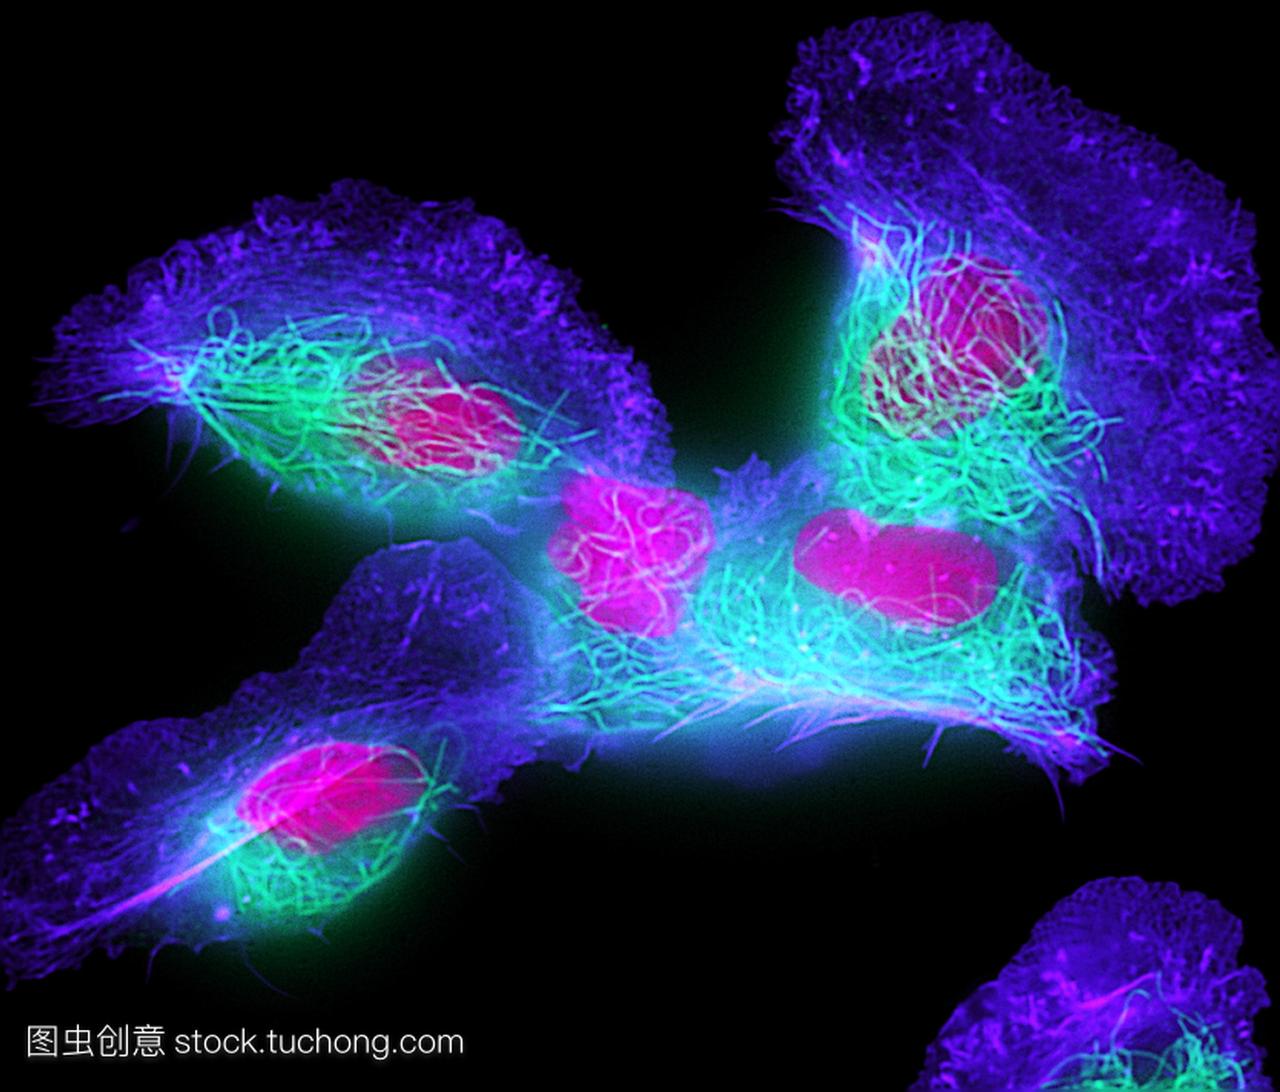 鱼的皮肤细胞。角化细胞鱼表皮细胞的外荧光光